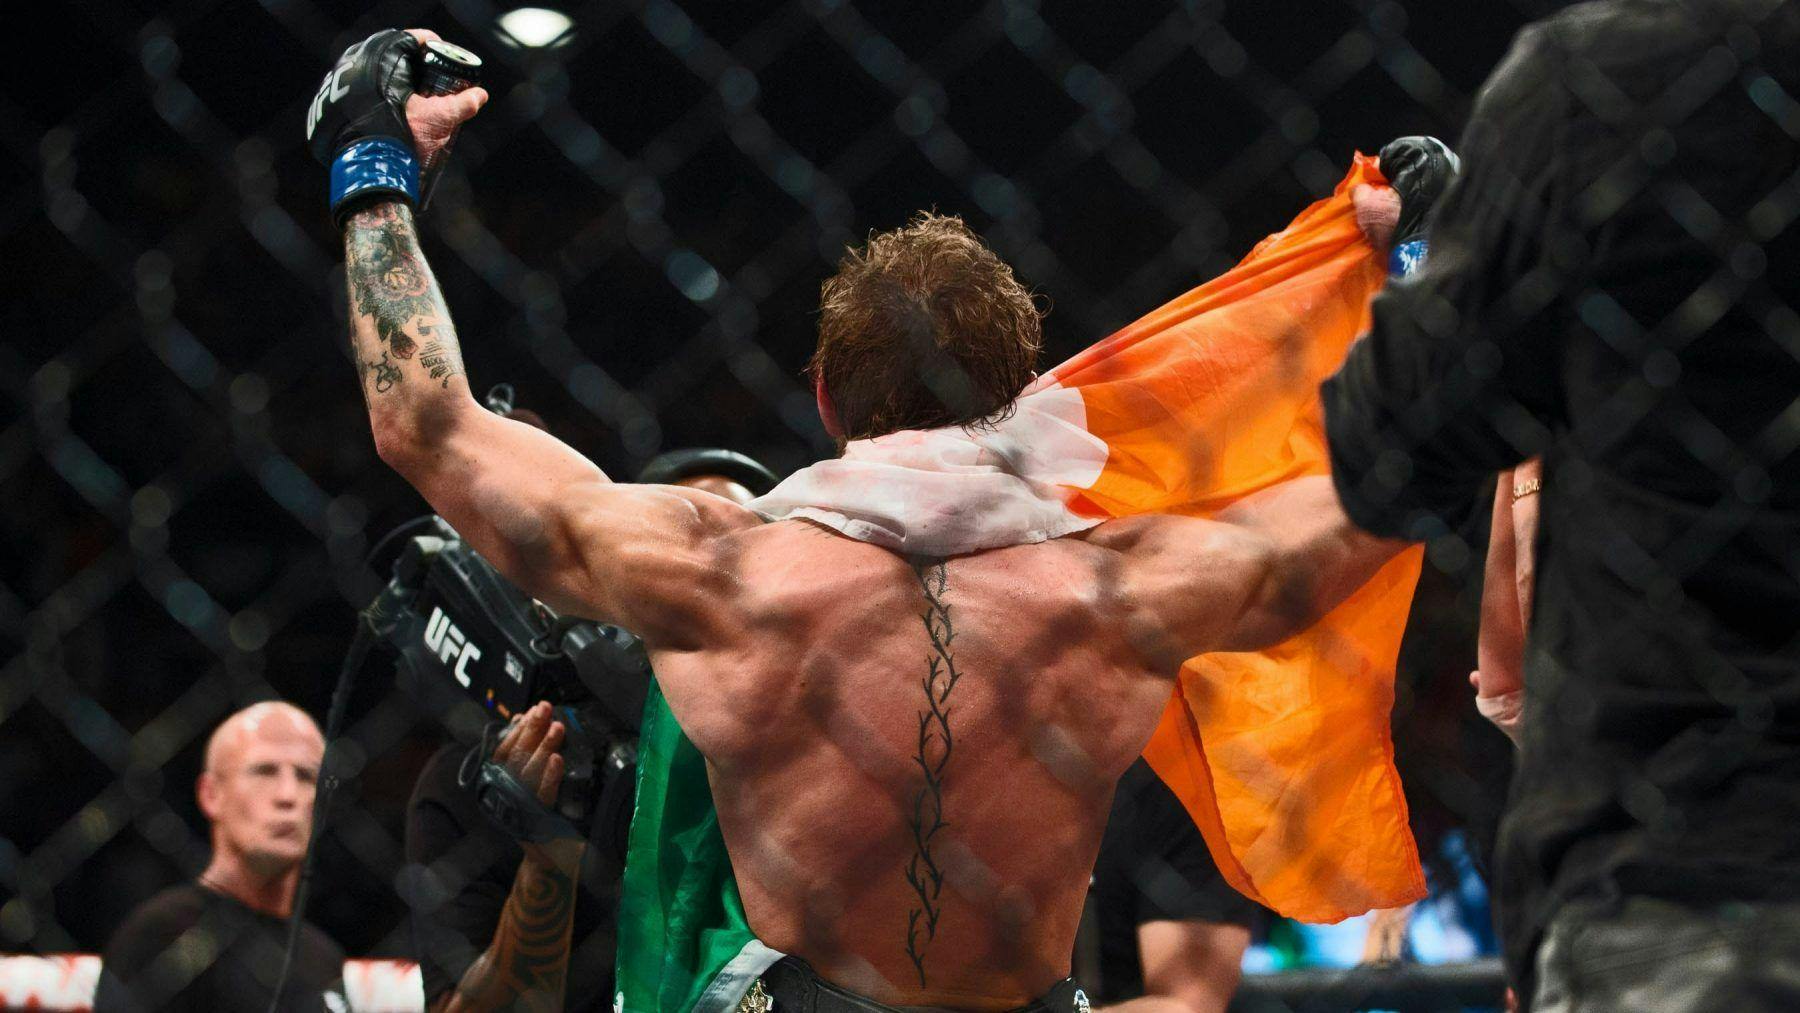 El peleador de mma Conor Mcgregor sosteniendo la bandera de Irlanda con los brazos en alto victorioso después de un combate de ufc